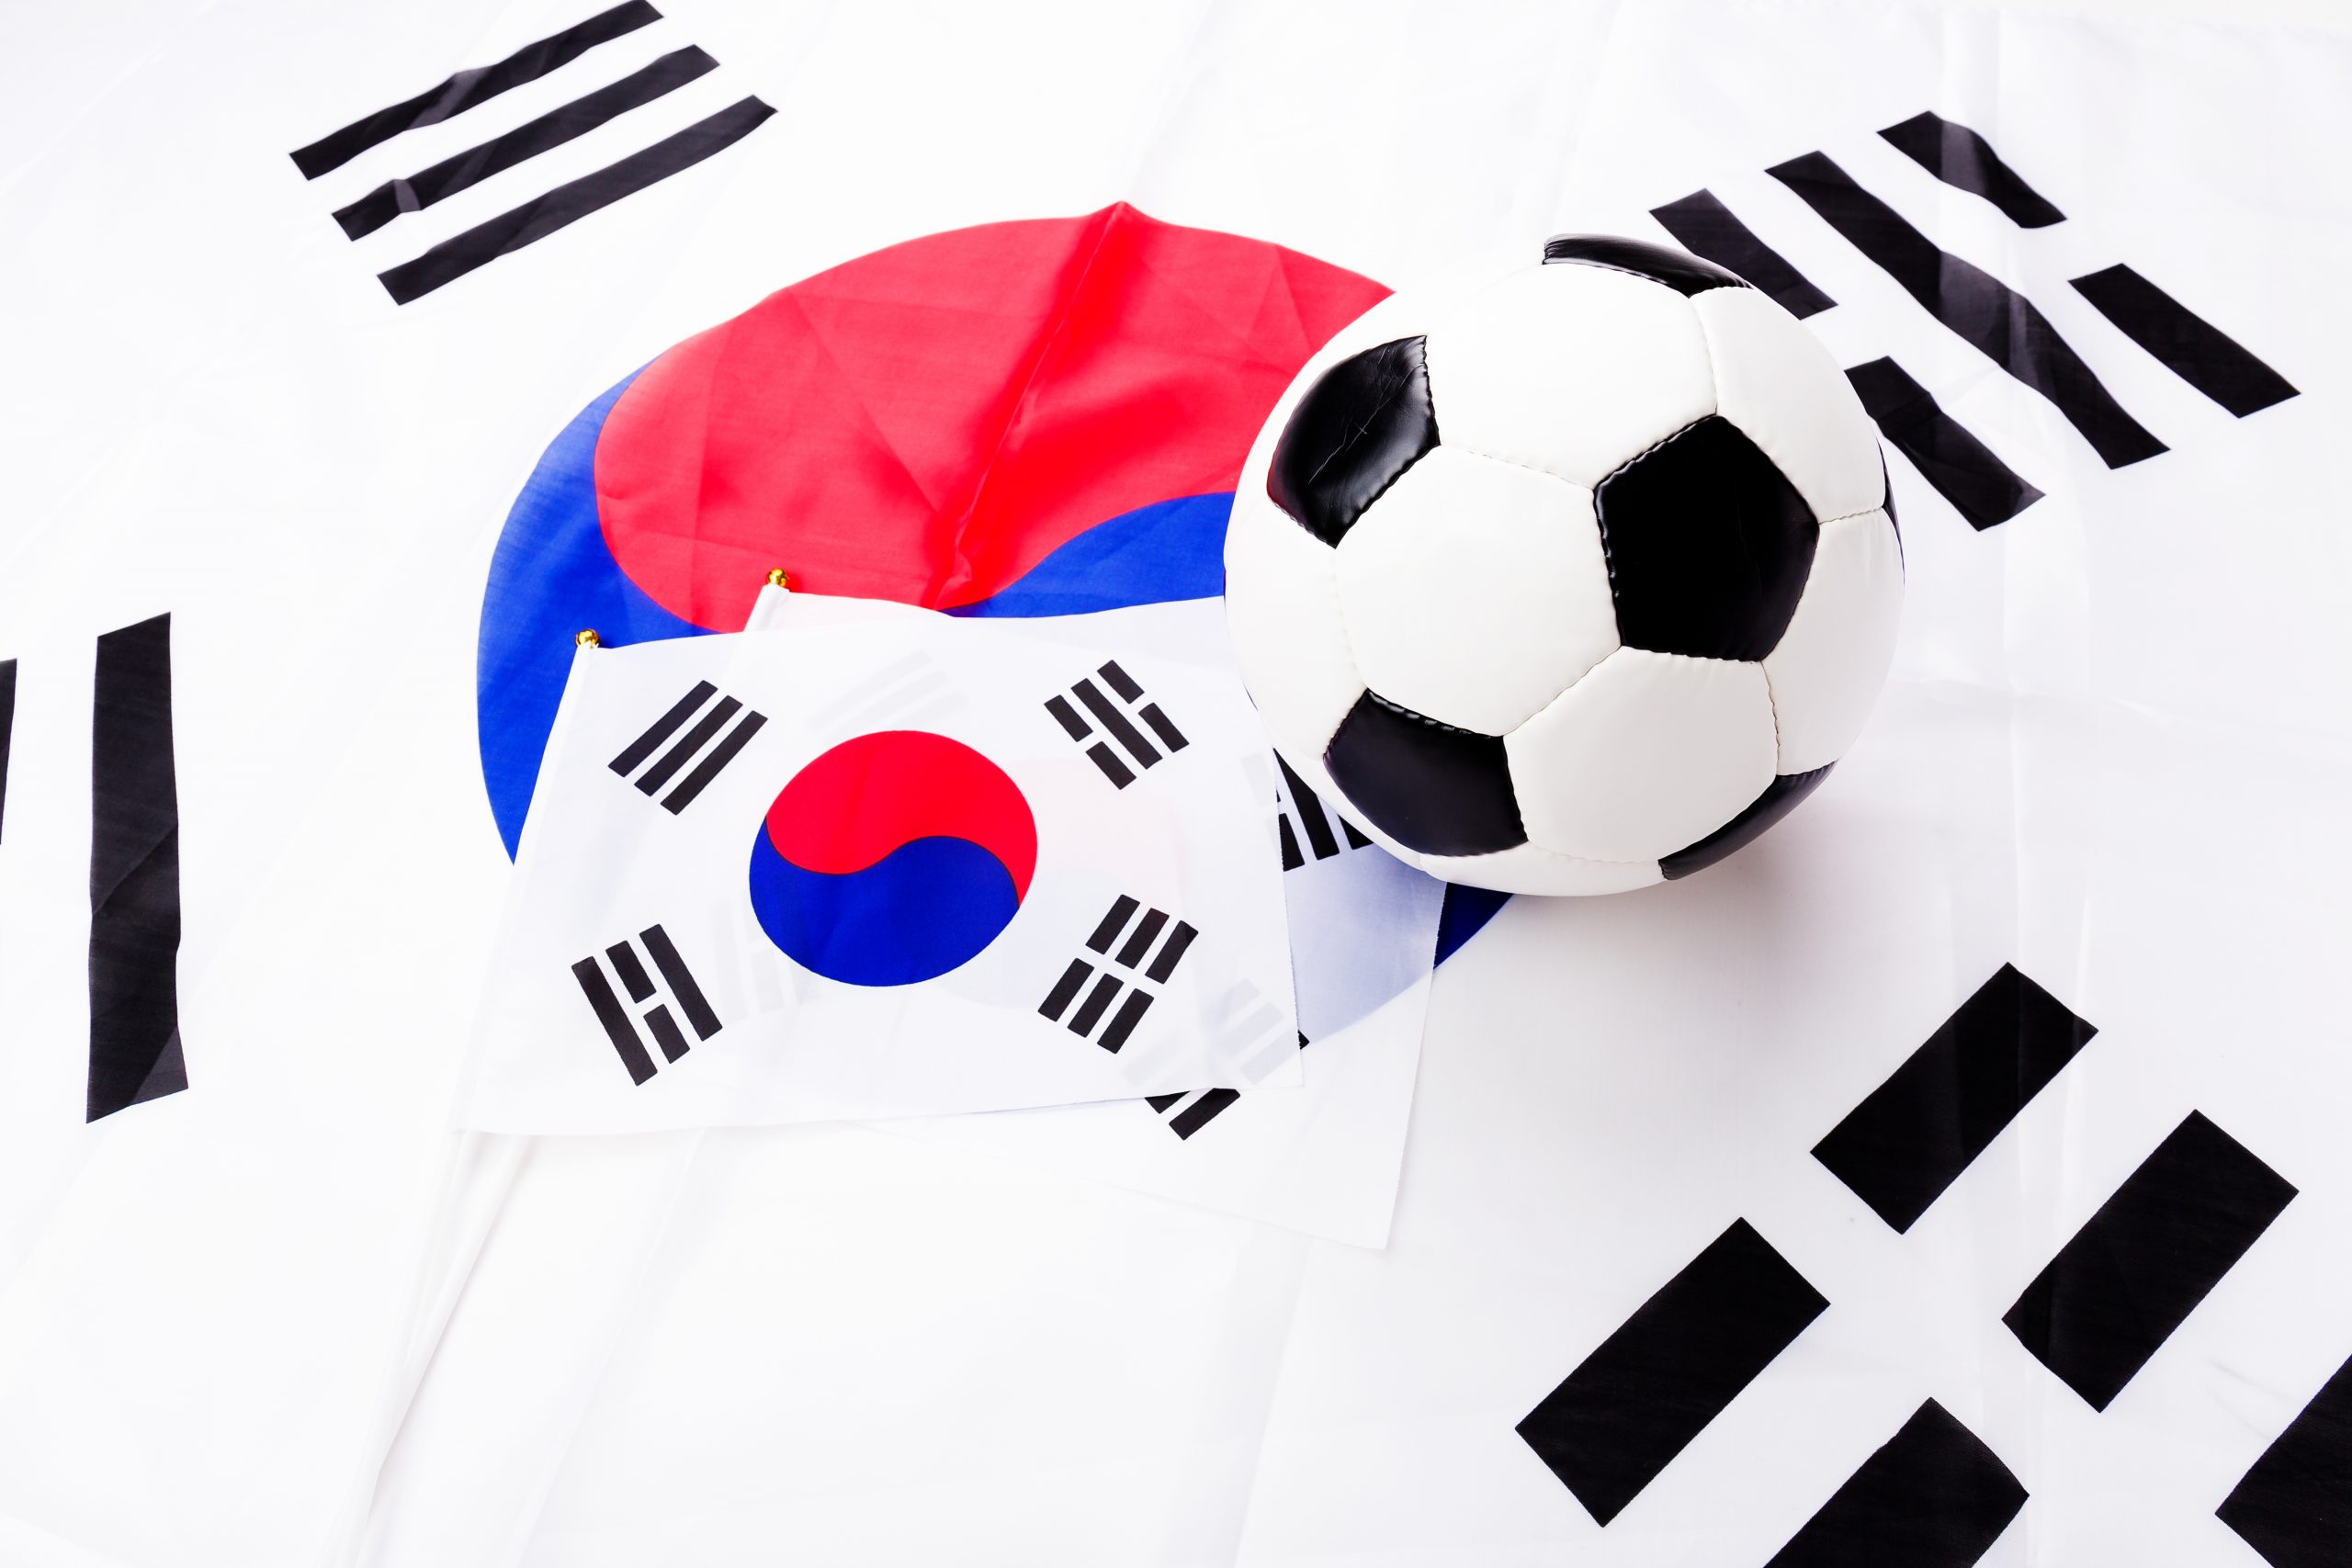 한국에서 온라인으로 합법적으로 스포츠에 돈을 걸려면 어떻게 해야 하나요?